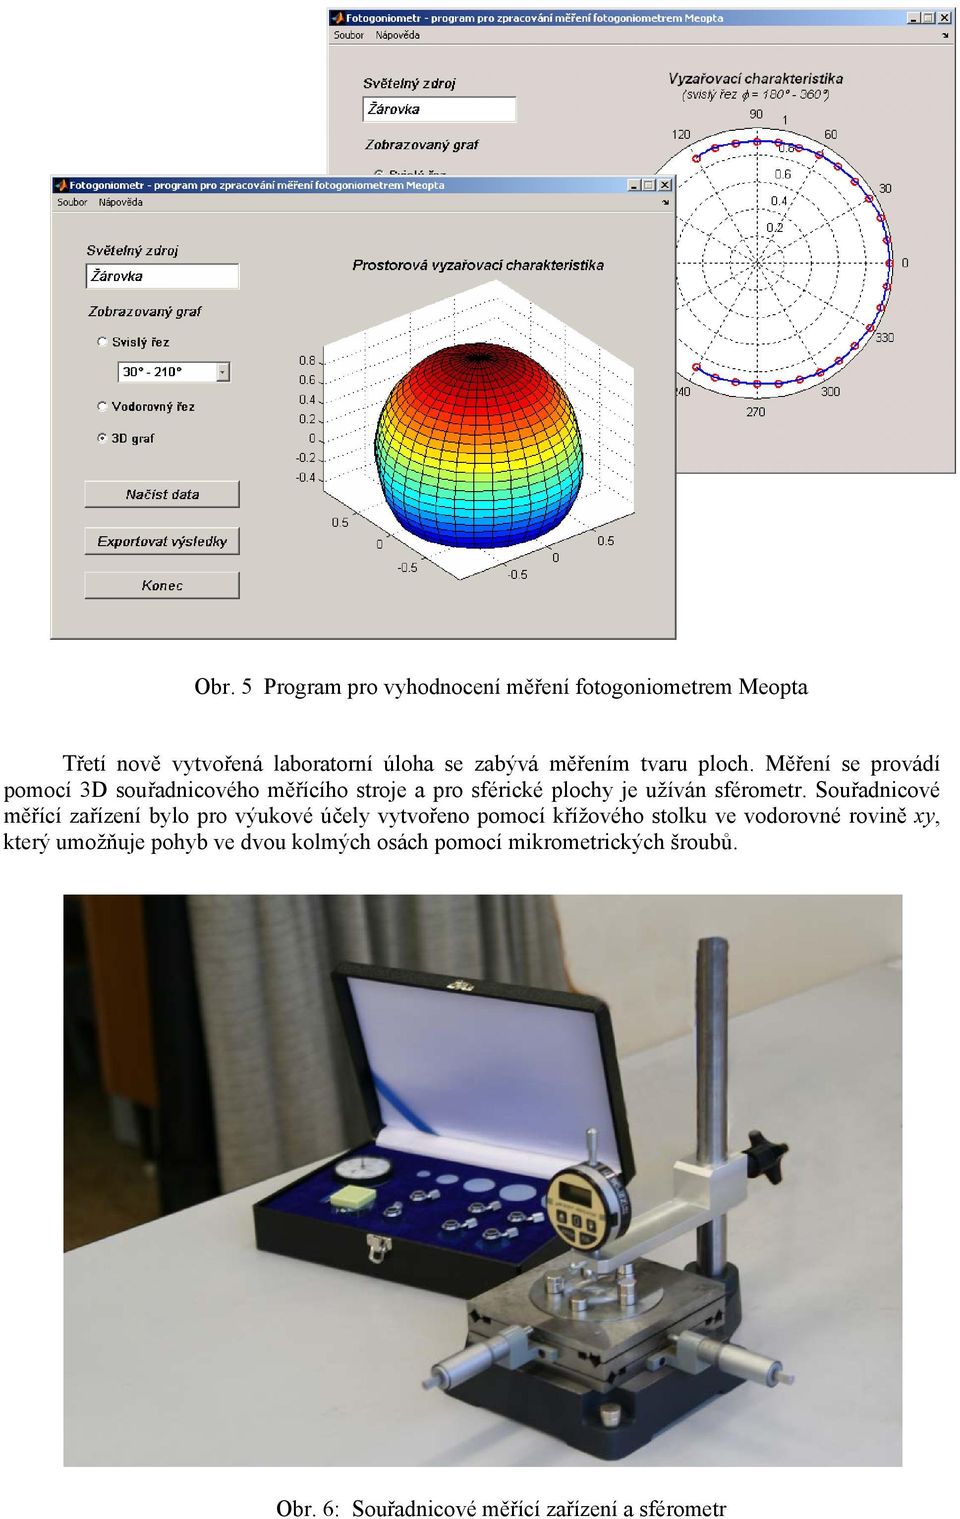 Měření se provádí pomocí 3D souřadnicového měřícího stroje a pro sférické plochy je užíván sférometr.